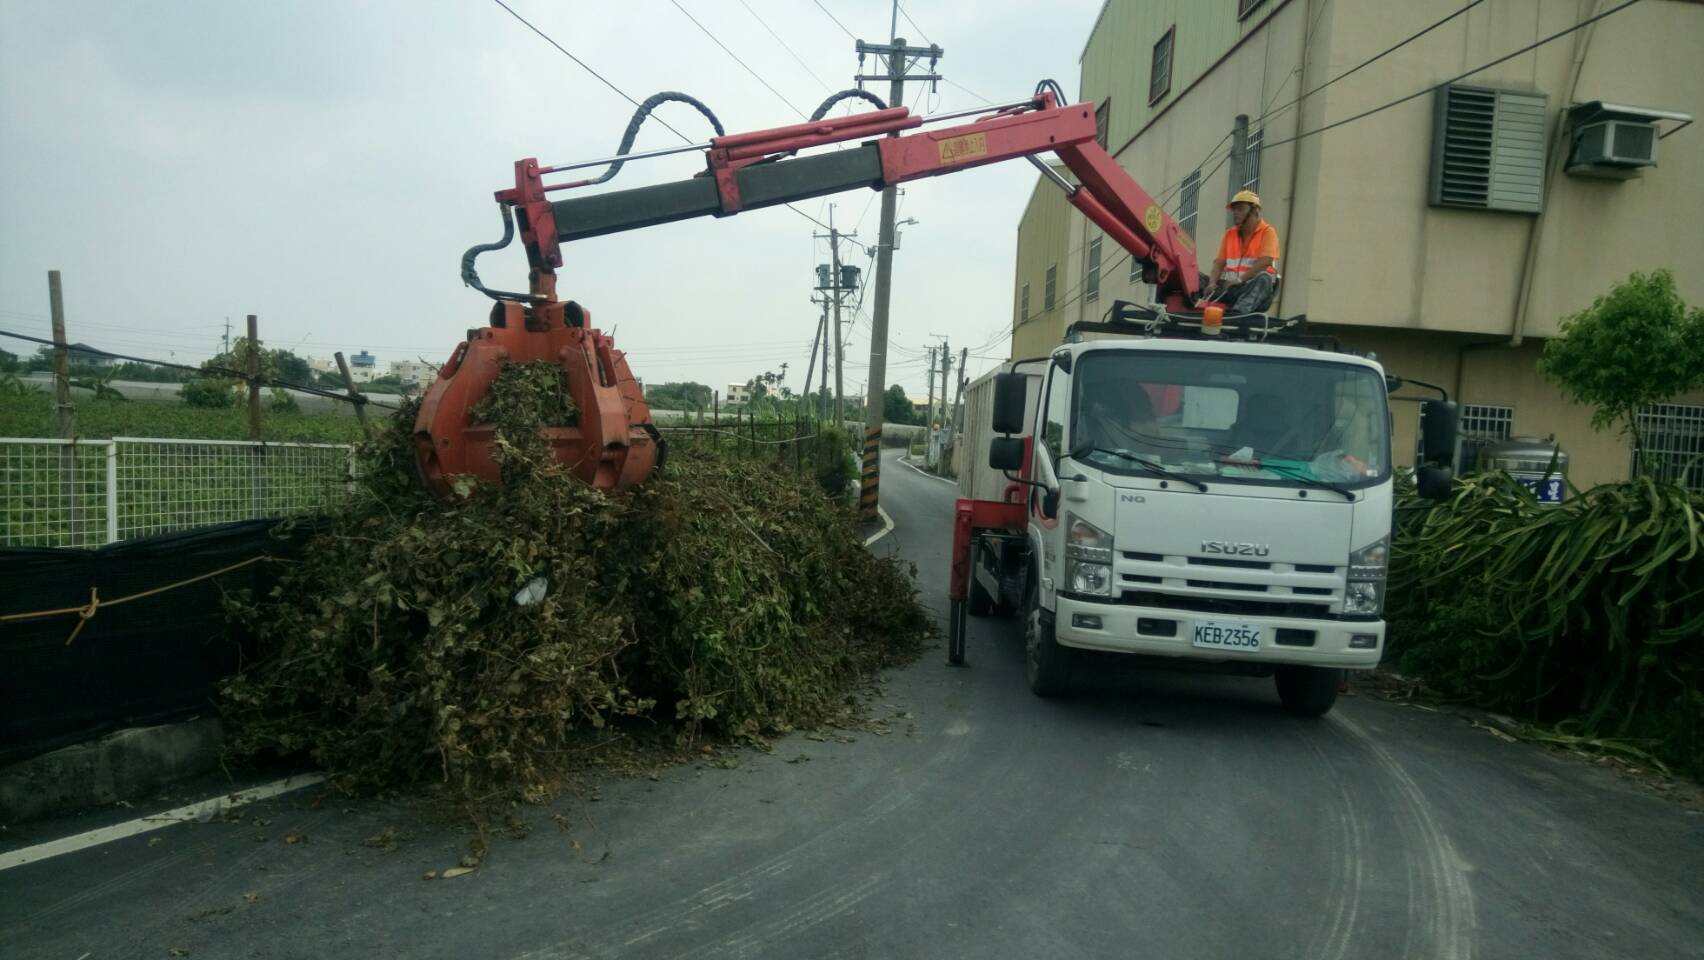 清潔隊業務專區抓斗車處理大宗葡萄枝樹枝廢棄物